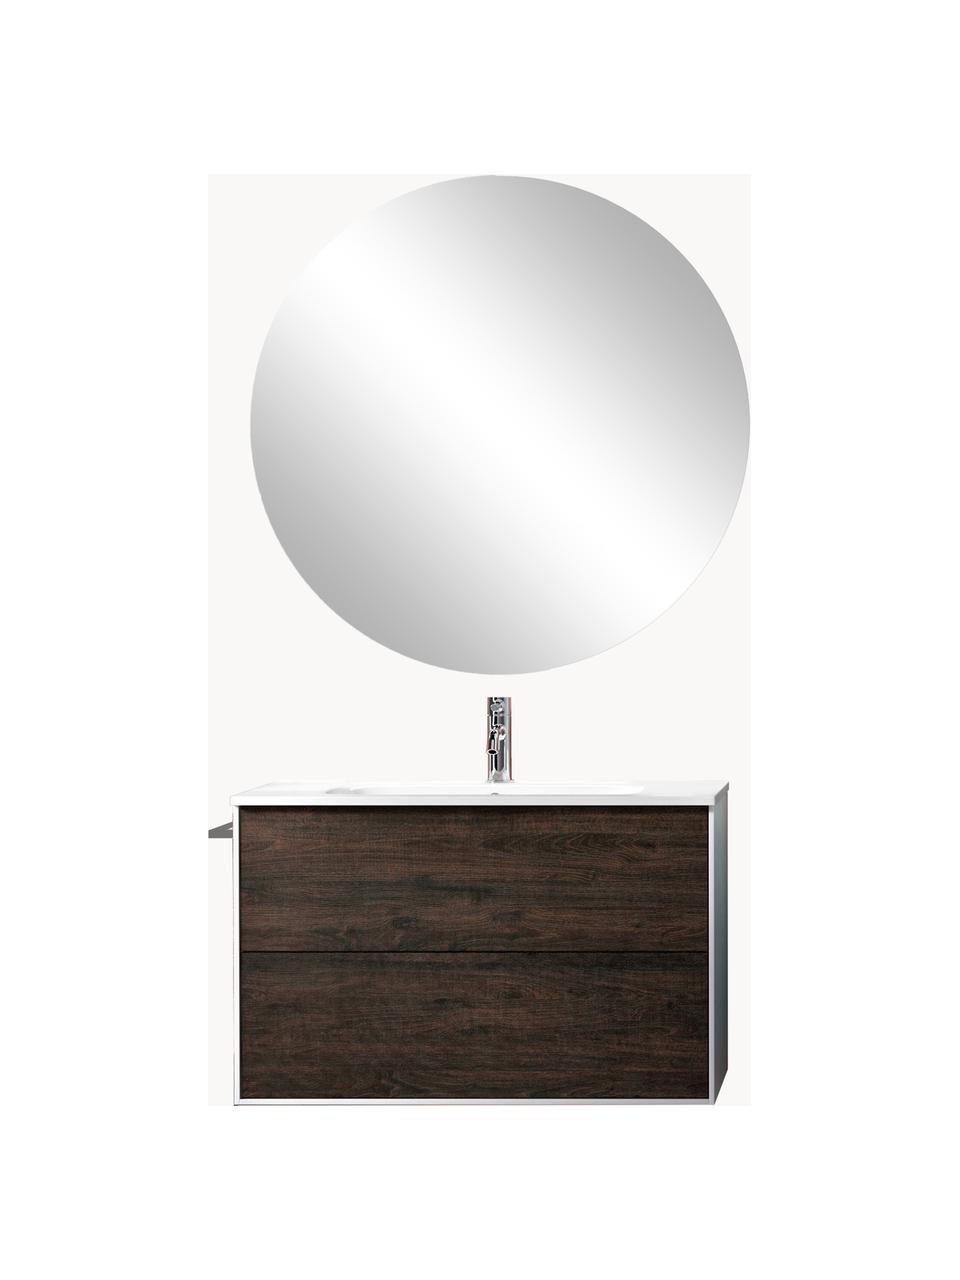 Waschtisch-Set Ago, 4-tlg., Spiegelfläche: Spiegelglas, Rückseite: ABS-Kunststoff, Weiß, Eschenholz-Optik, B 81 x H 190 cm